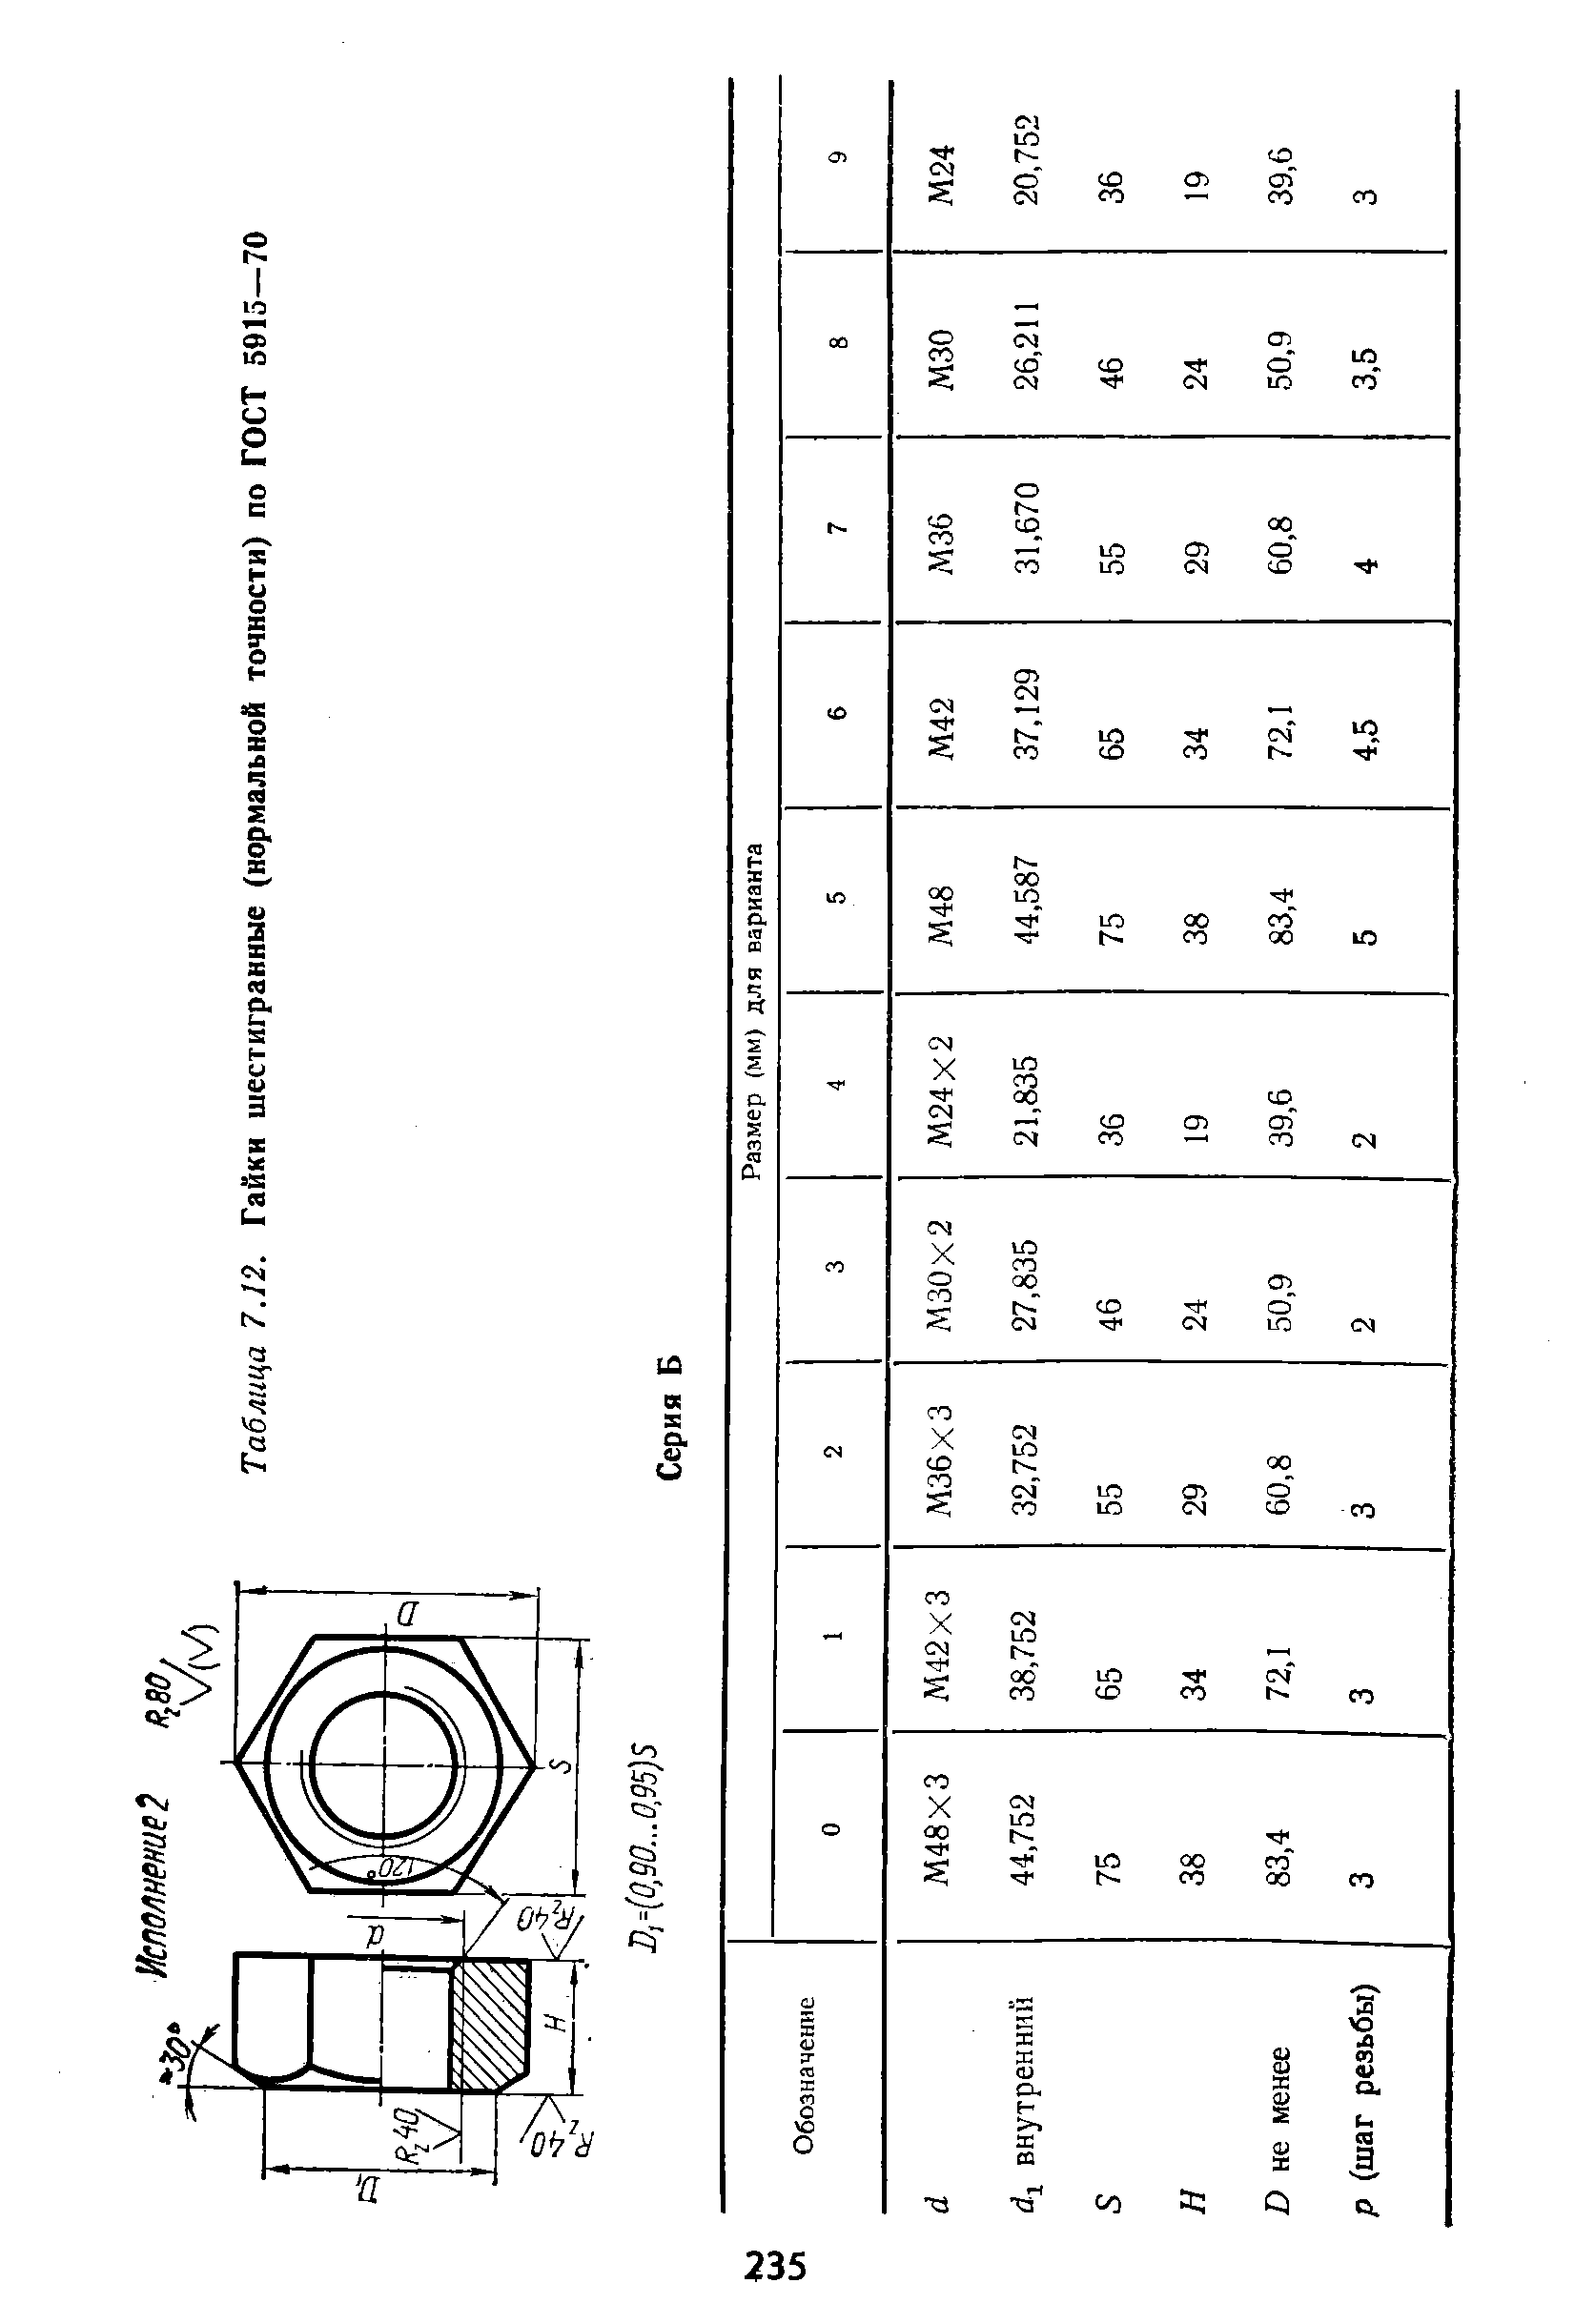 Таблица 7.12. Гайки шестигранные (нормальной точности) по ГОСТ 5915—70
